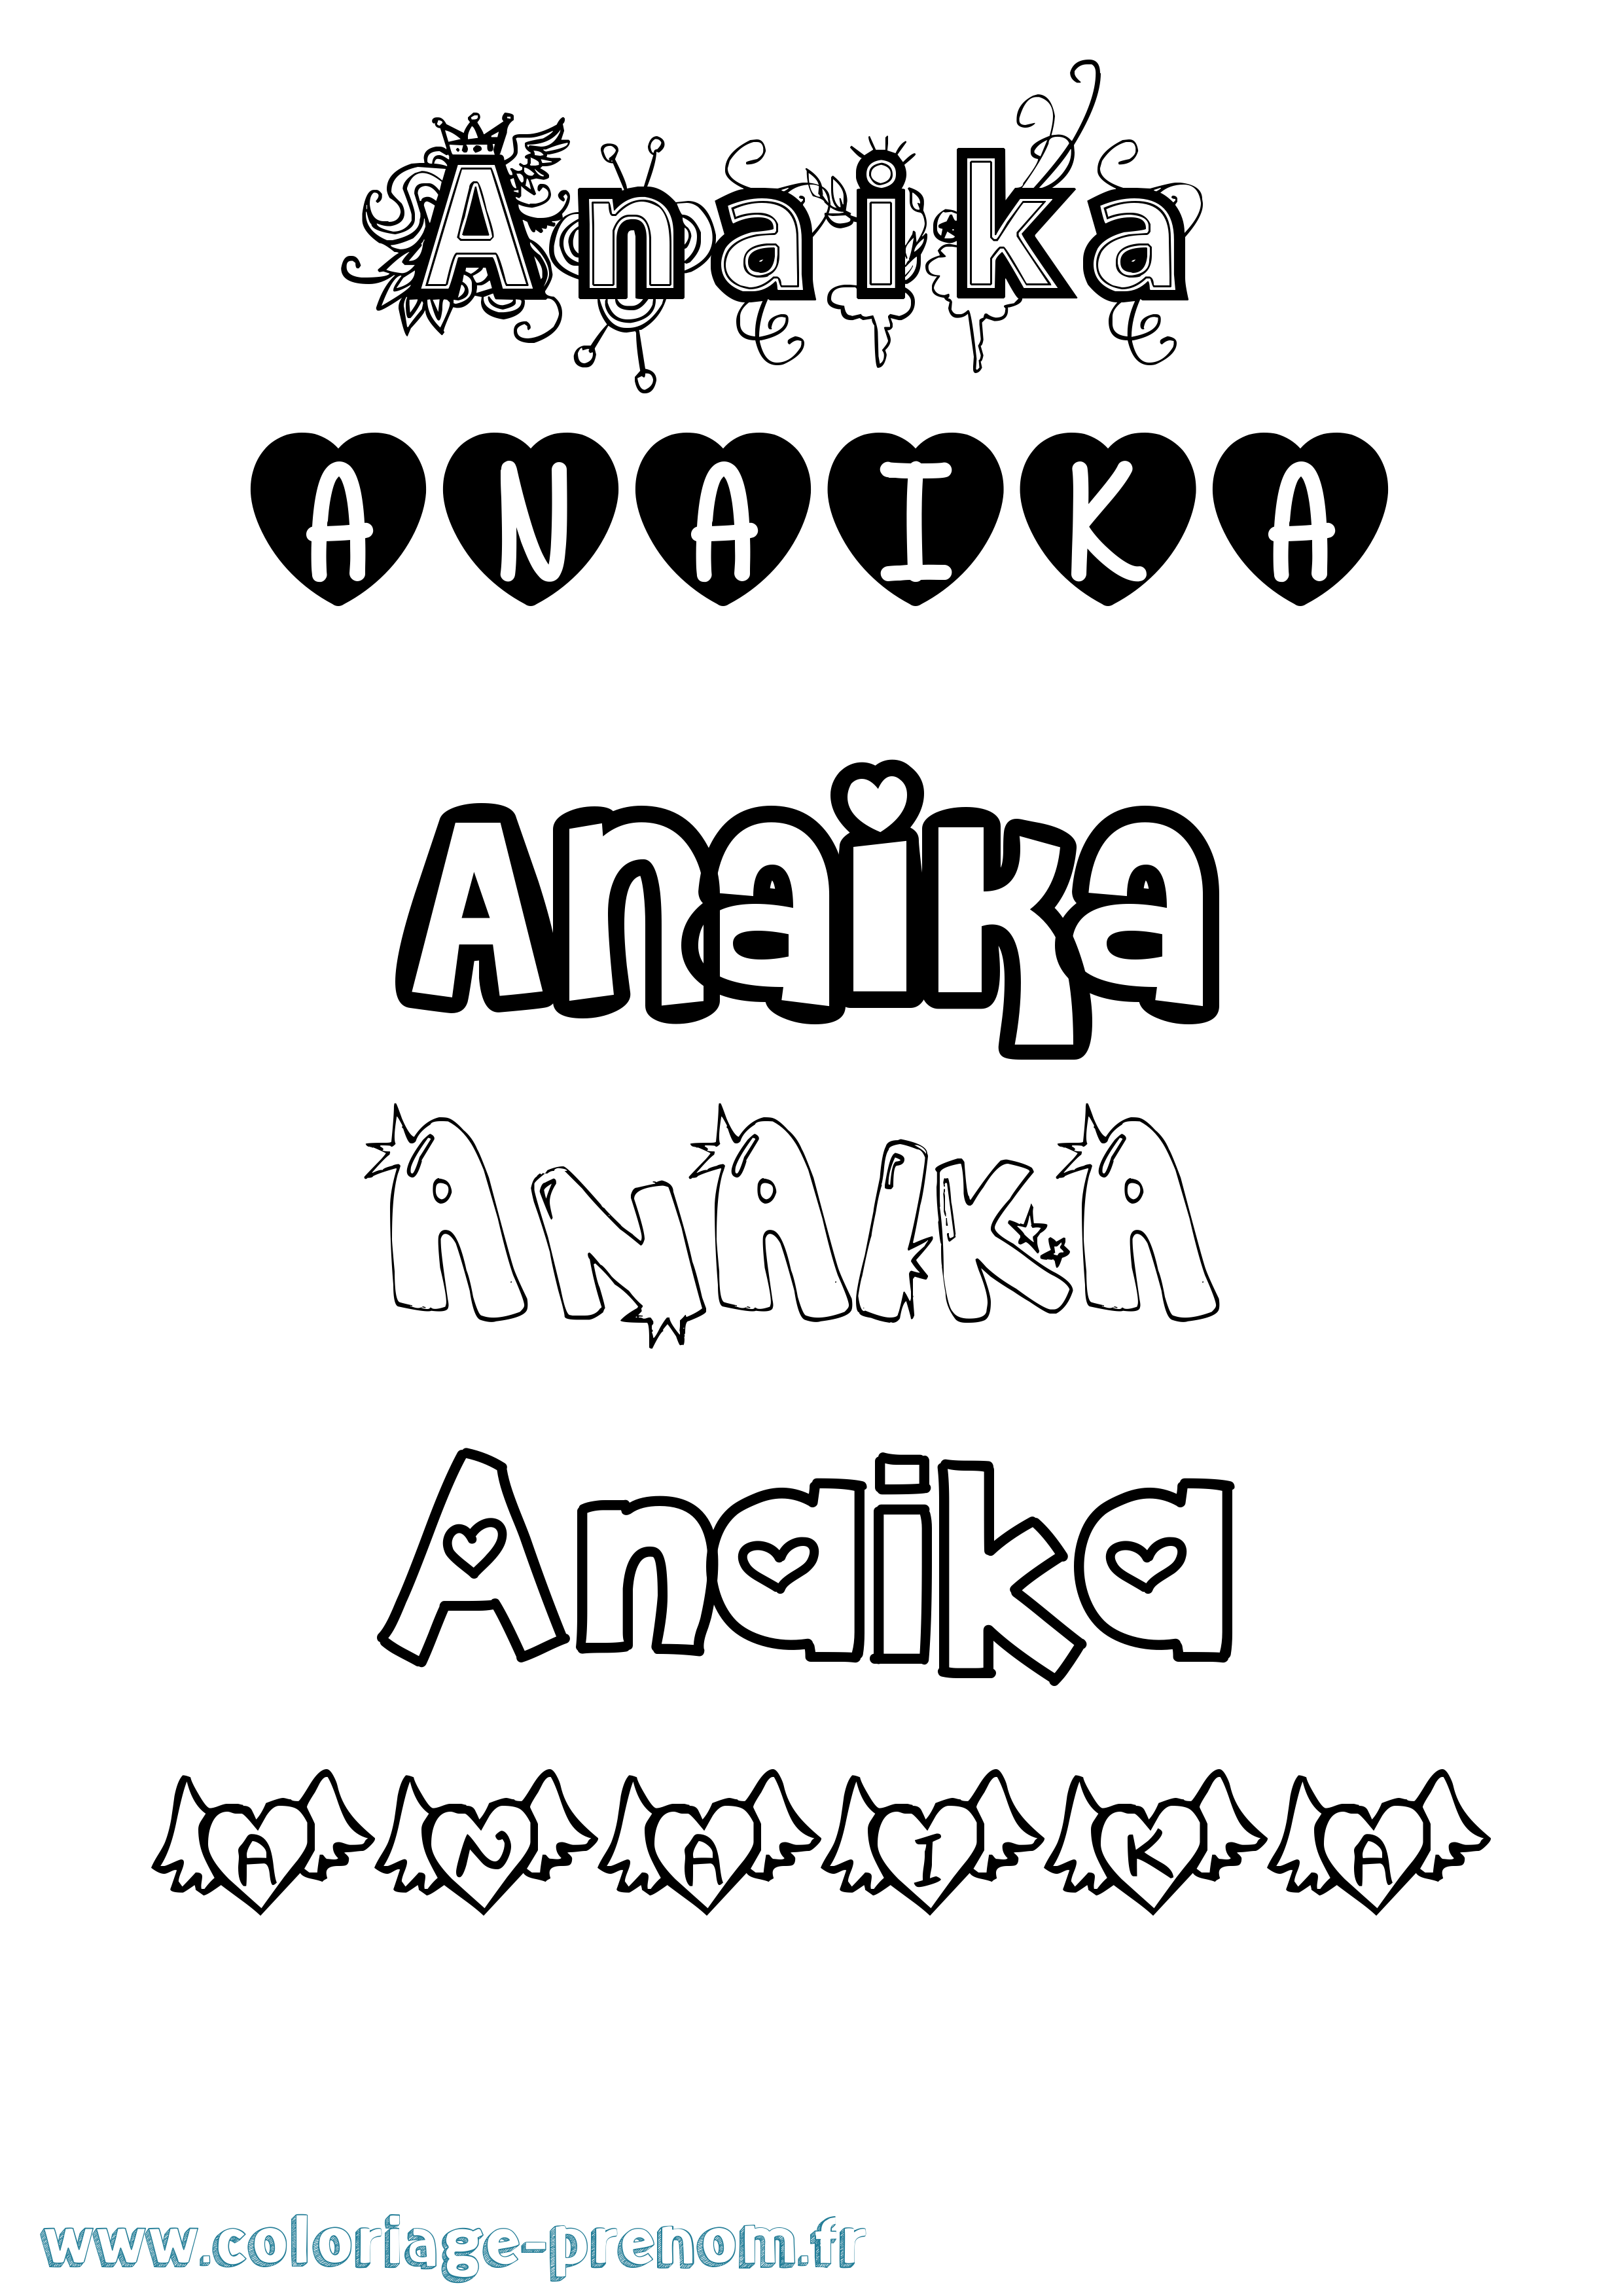 Coloriage prénom Anaika Girly